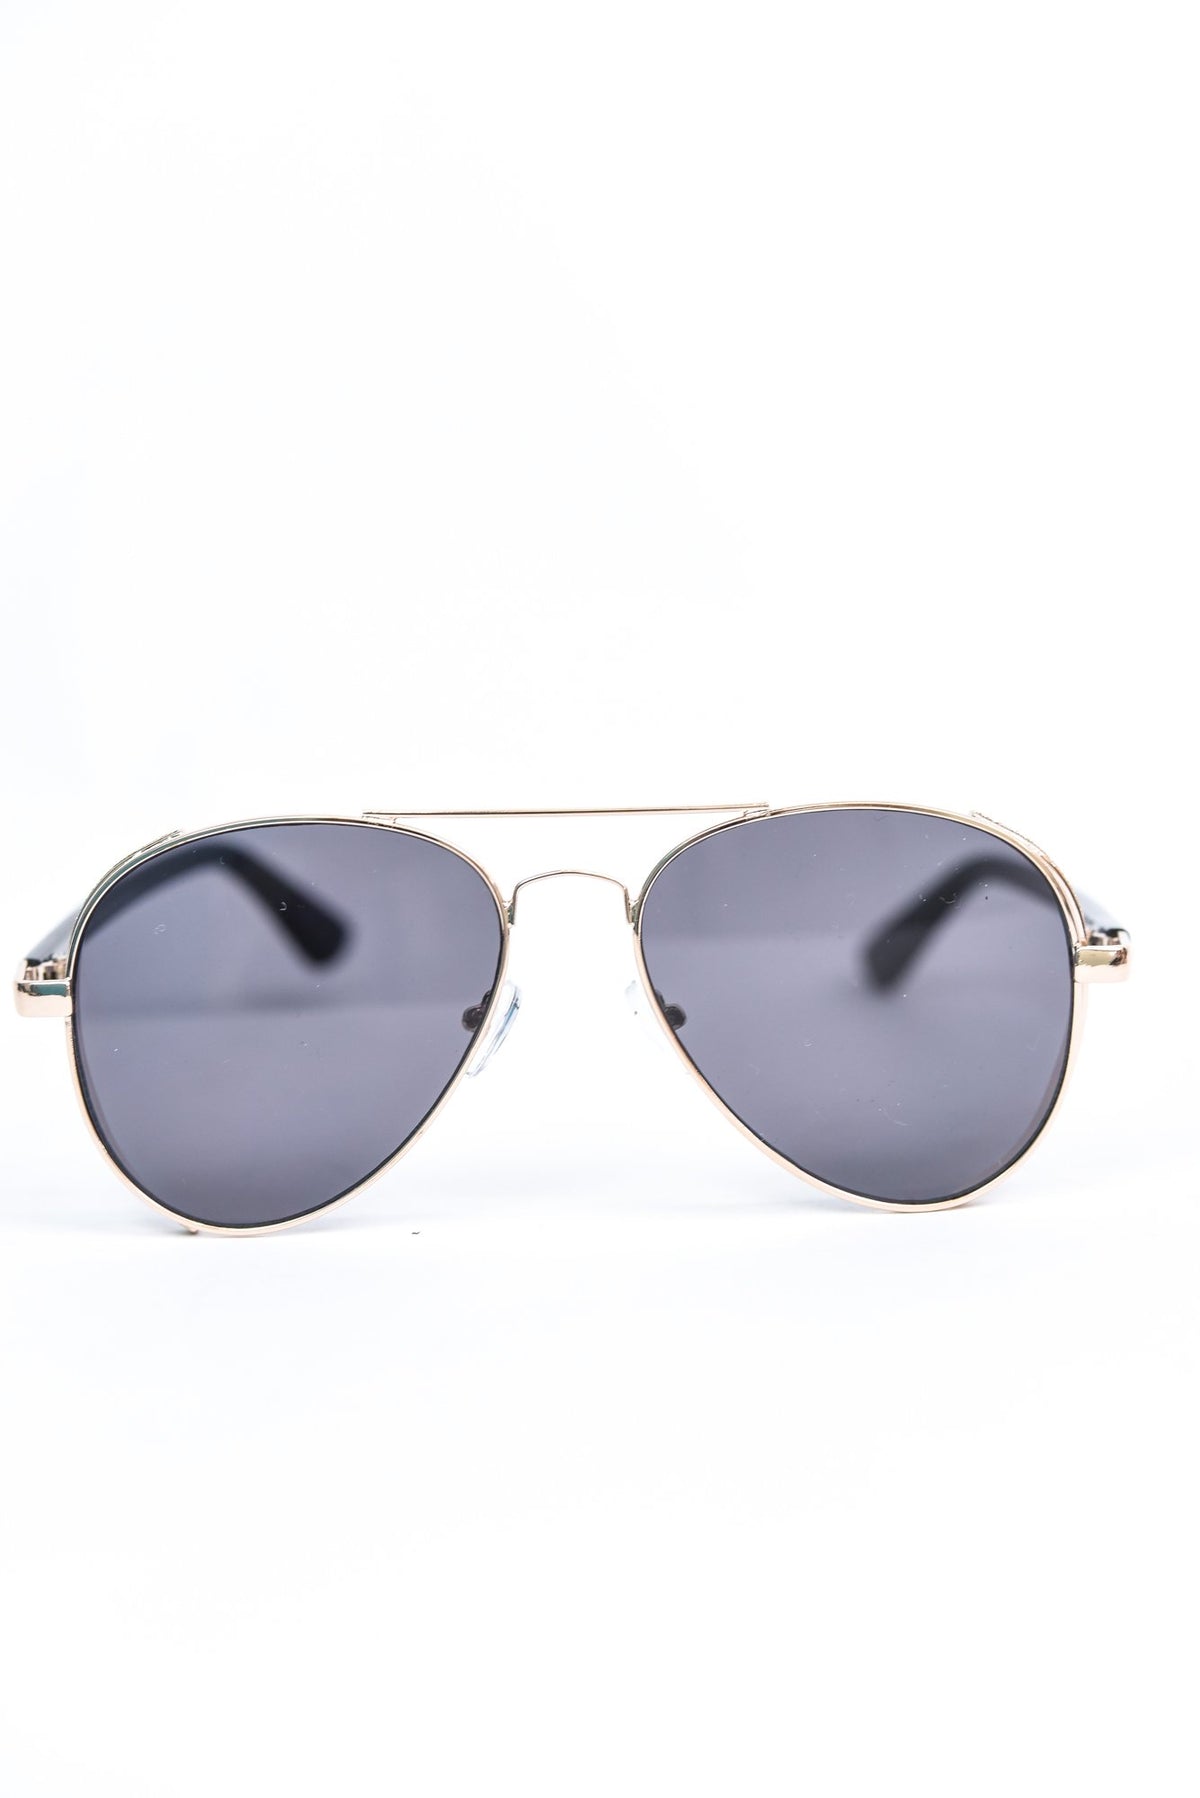 Gold Glitter Frame/Black Lens Aviator Sunglasses - SGL286GO - FREE hard case